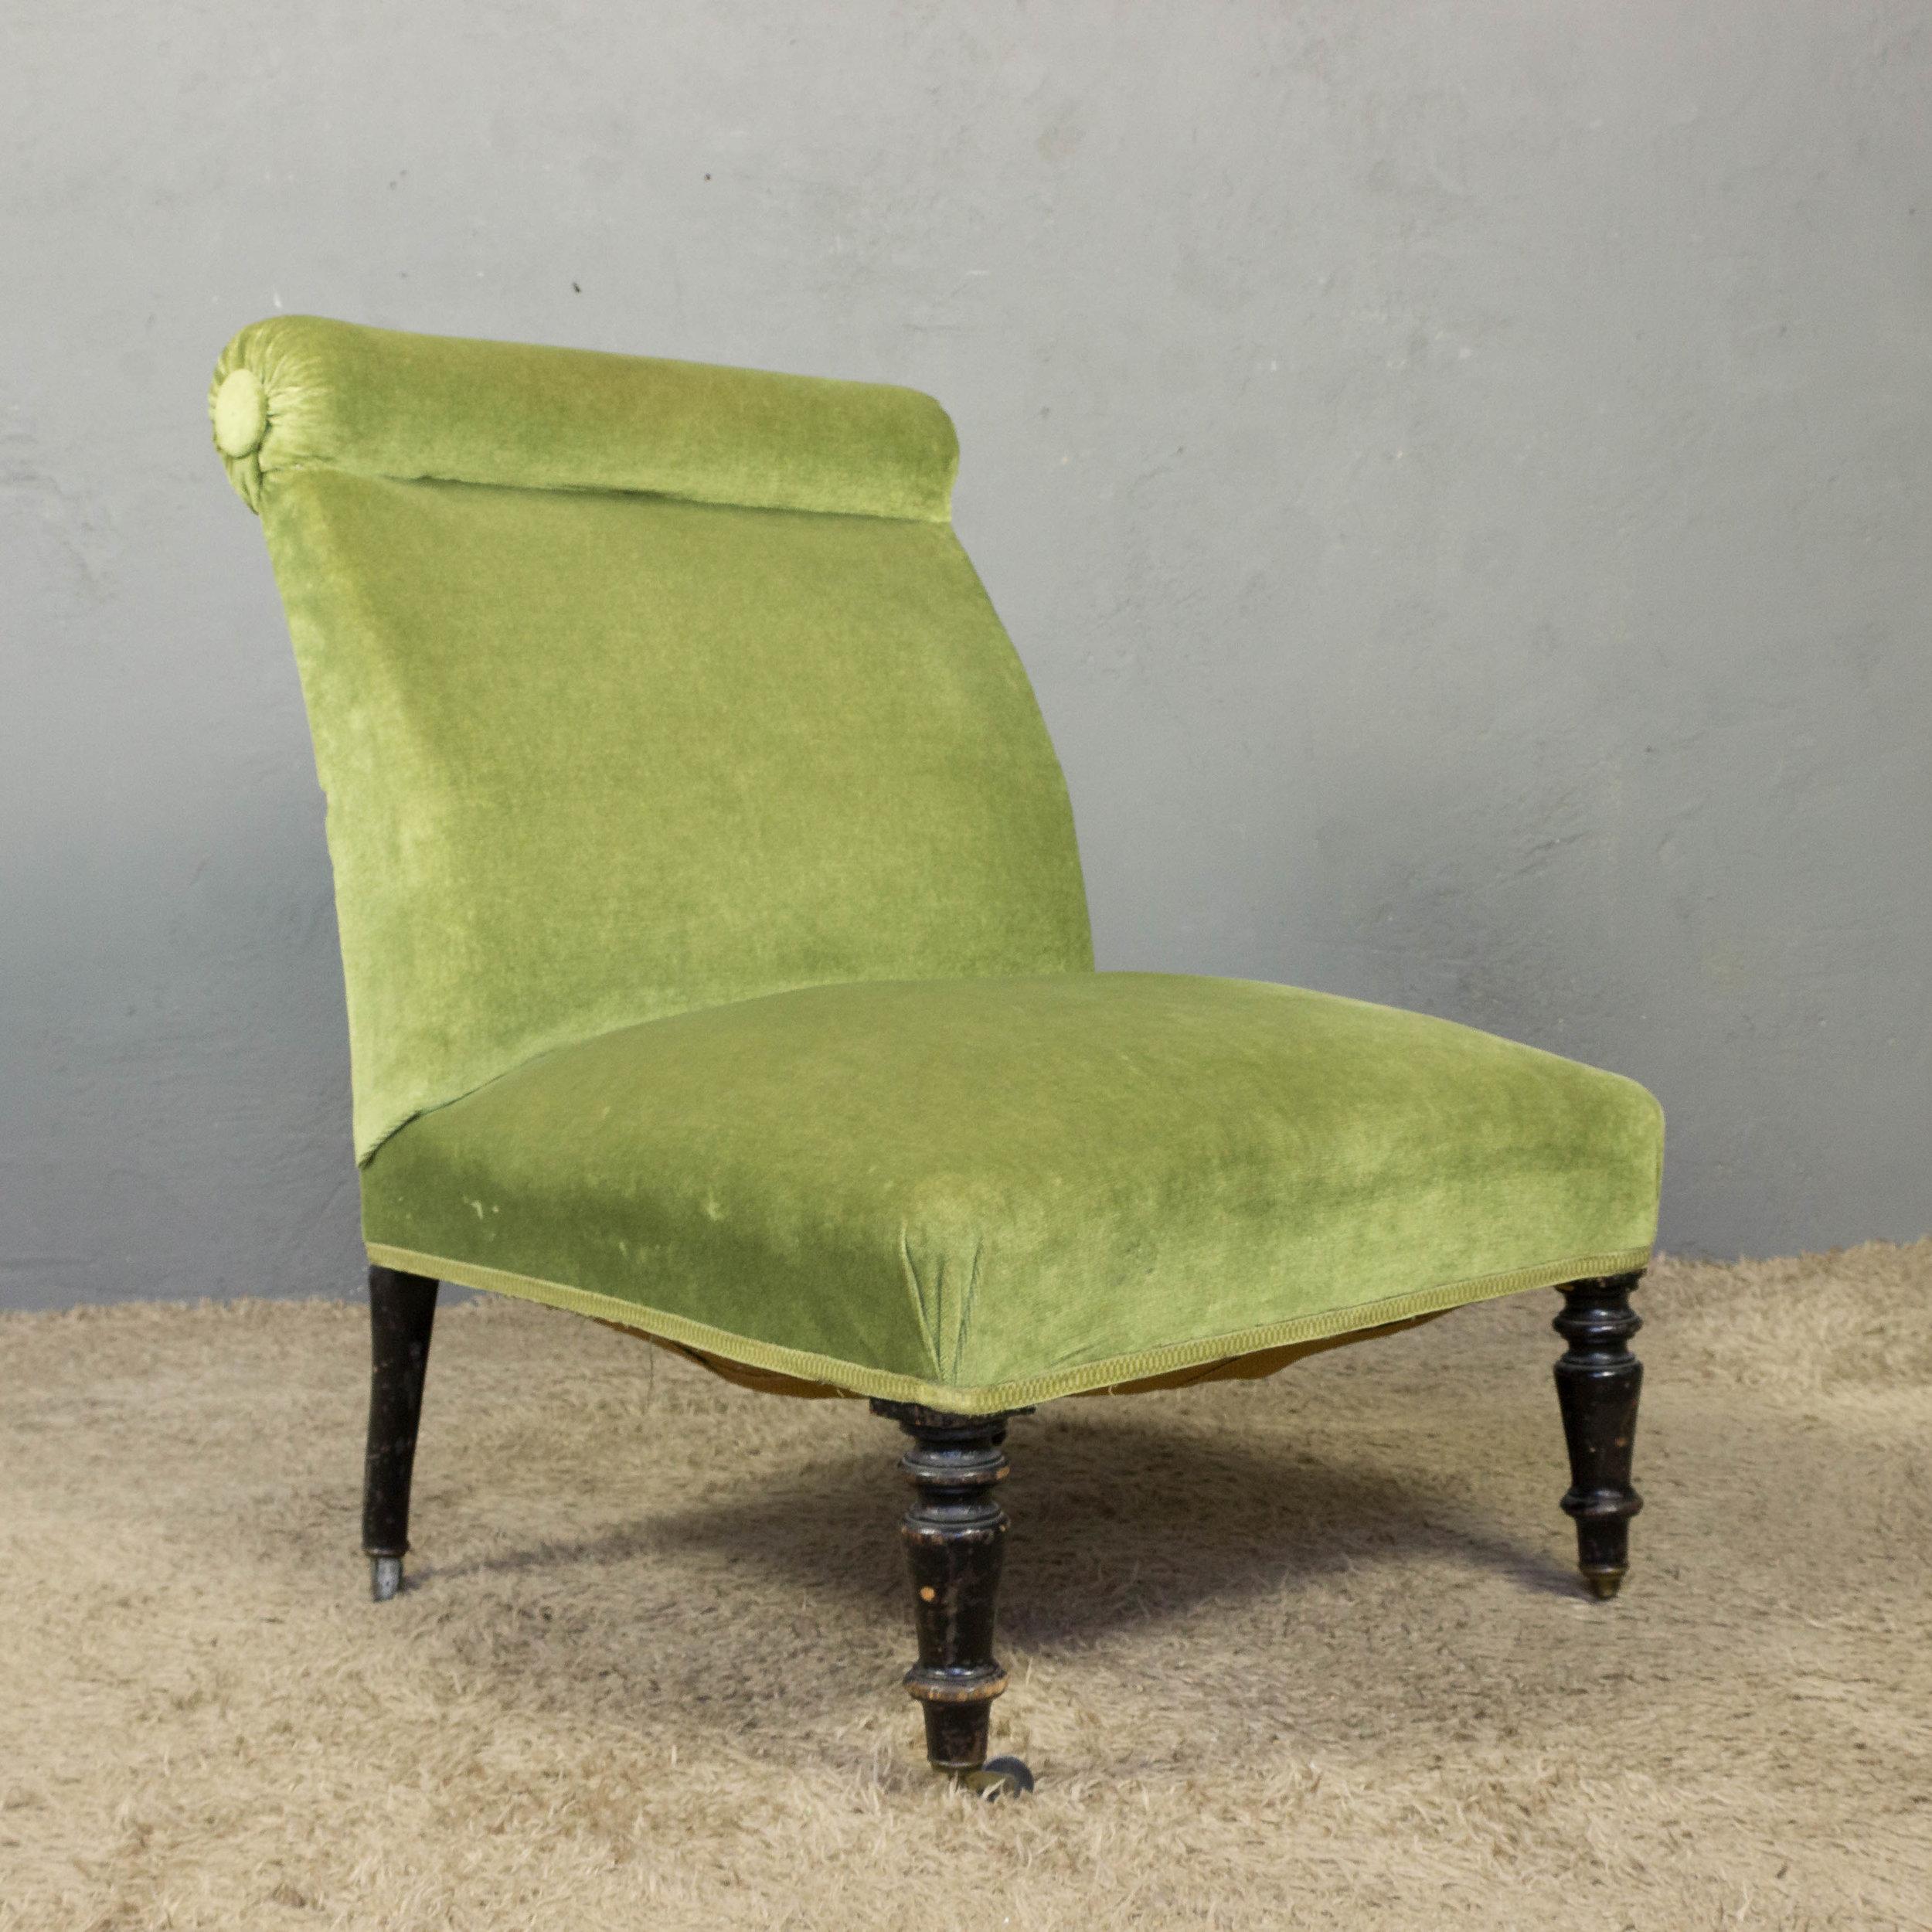 Un gracieux fauteuil Napoléon III du XIXe siècle en velours vert clair, qui ne manquera pas de faire sensation. La chaise pantoufle est dotée d'un dossier à volutes et d'un captivant revêtement en velours vert clair, ajoutant un air de raffinement à